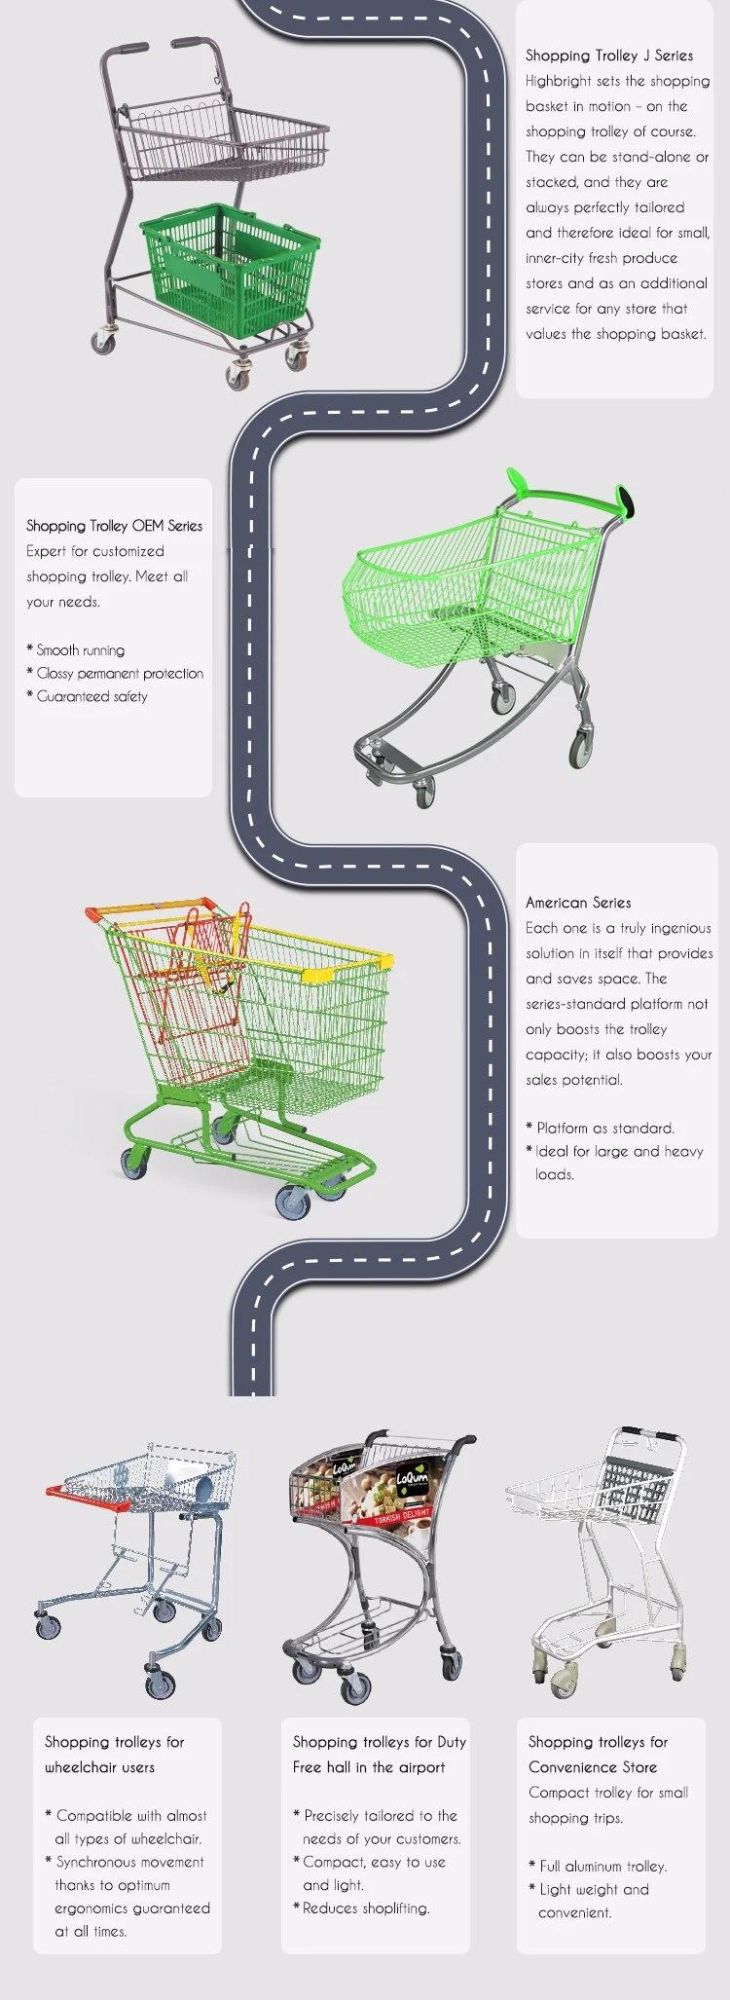 Supermarket New Design Shopping Cart Chromed Hand Trolley